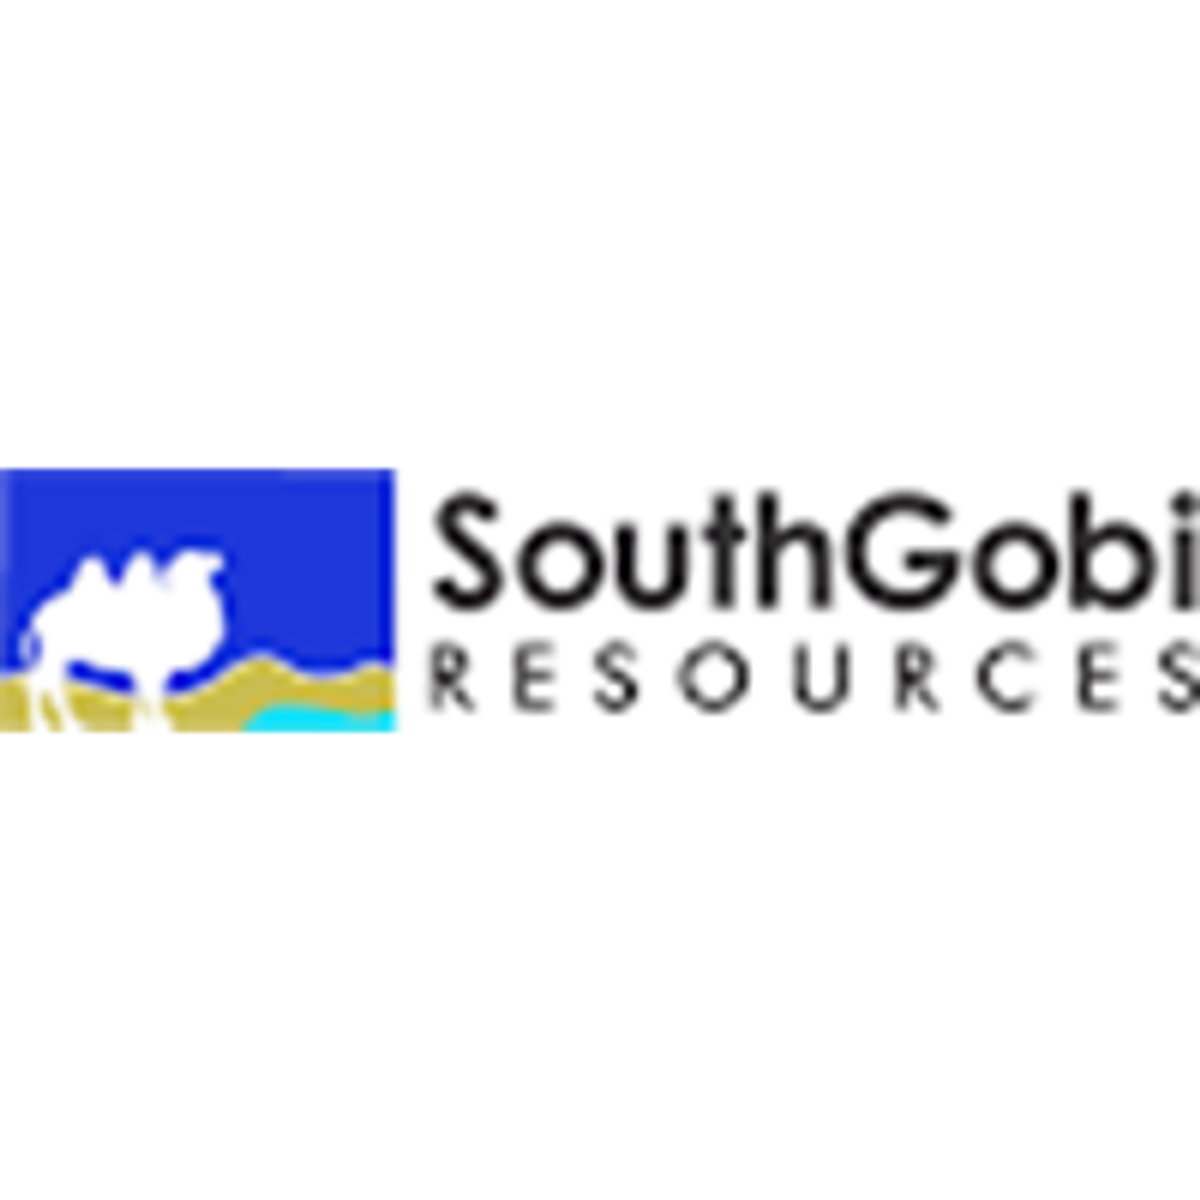 SouthGobi Announces Third Quarter 2022 Financial and Operating Results